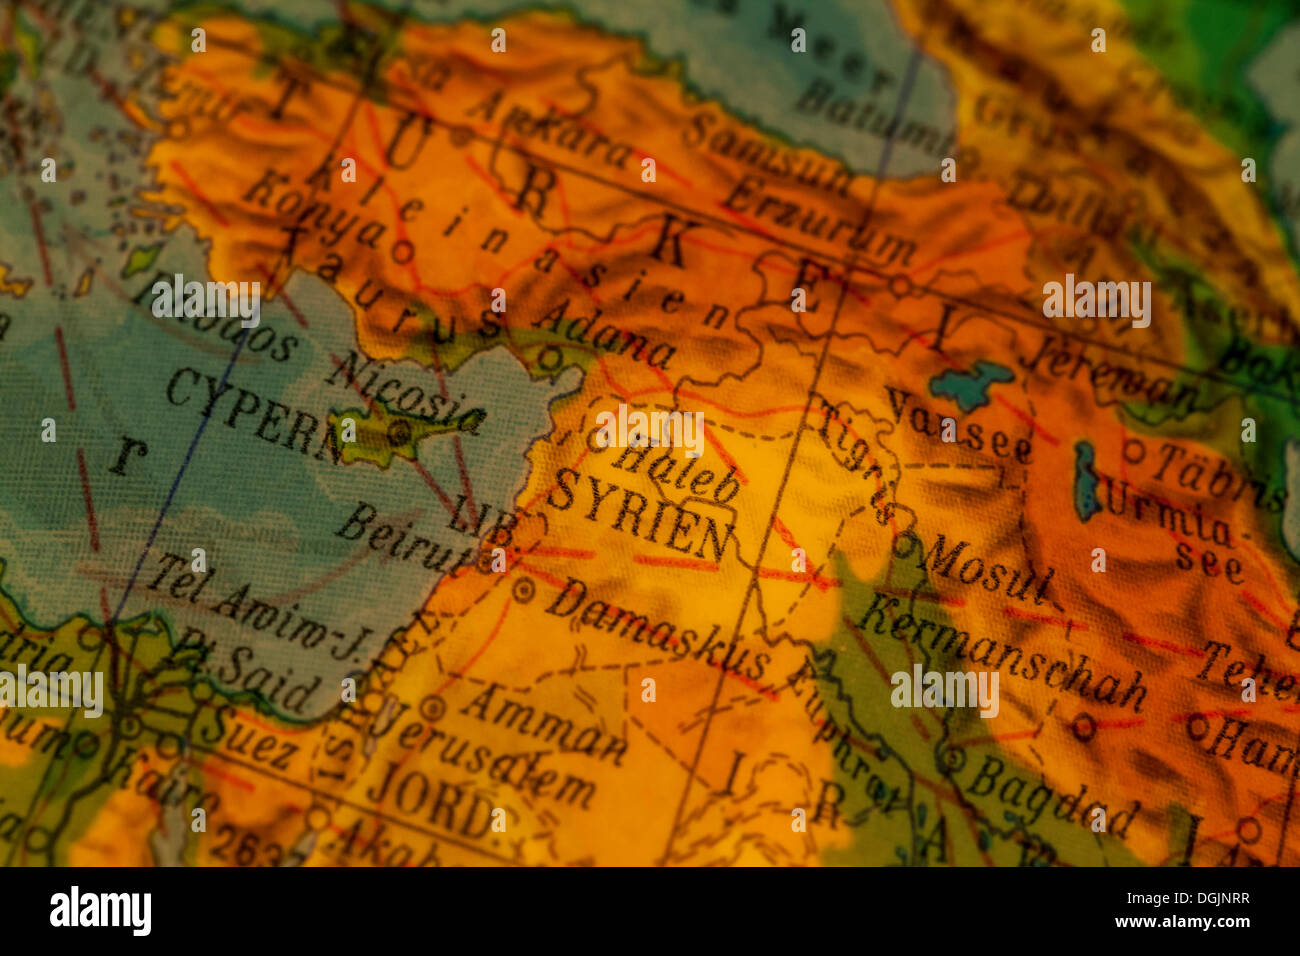 Syria, crisis region, Syrian-Turkish border, illuminated old globe, map section Stock Photo